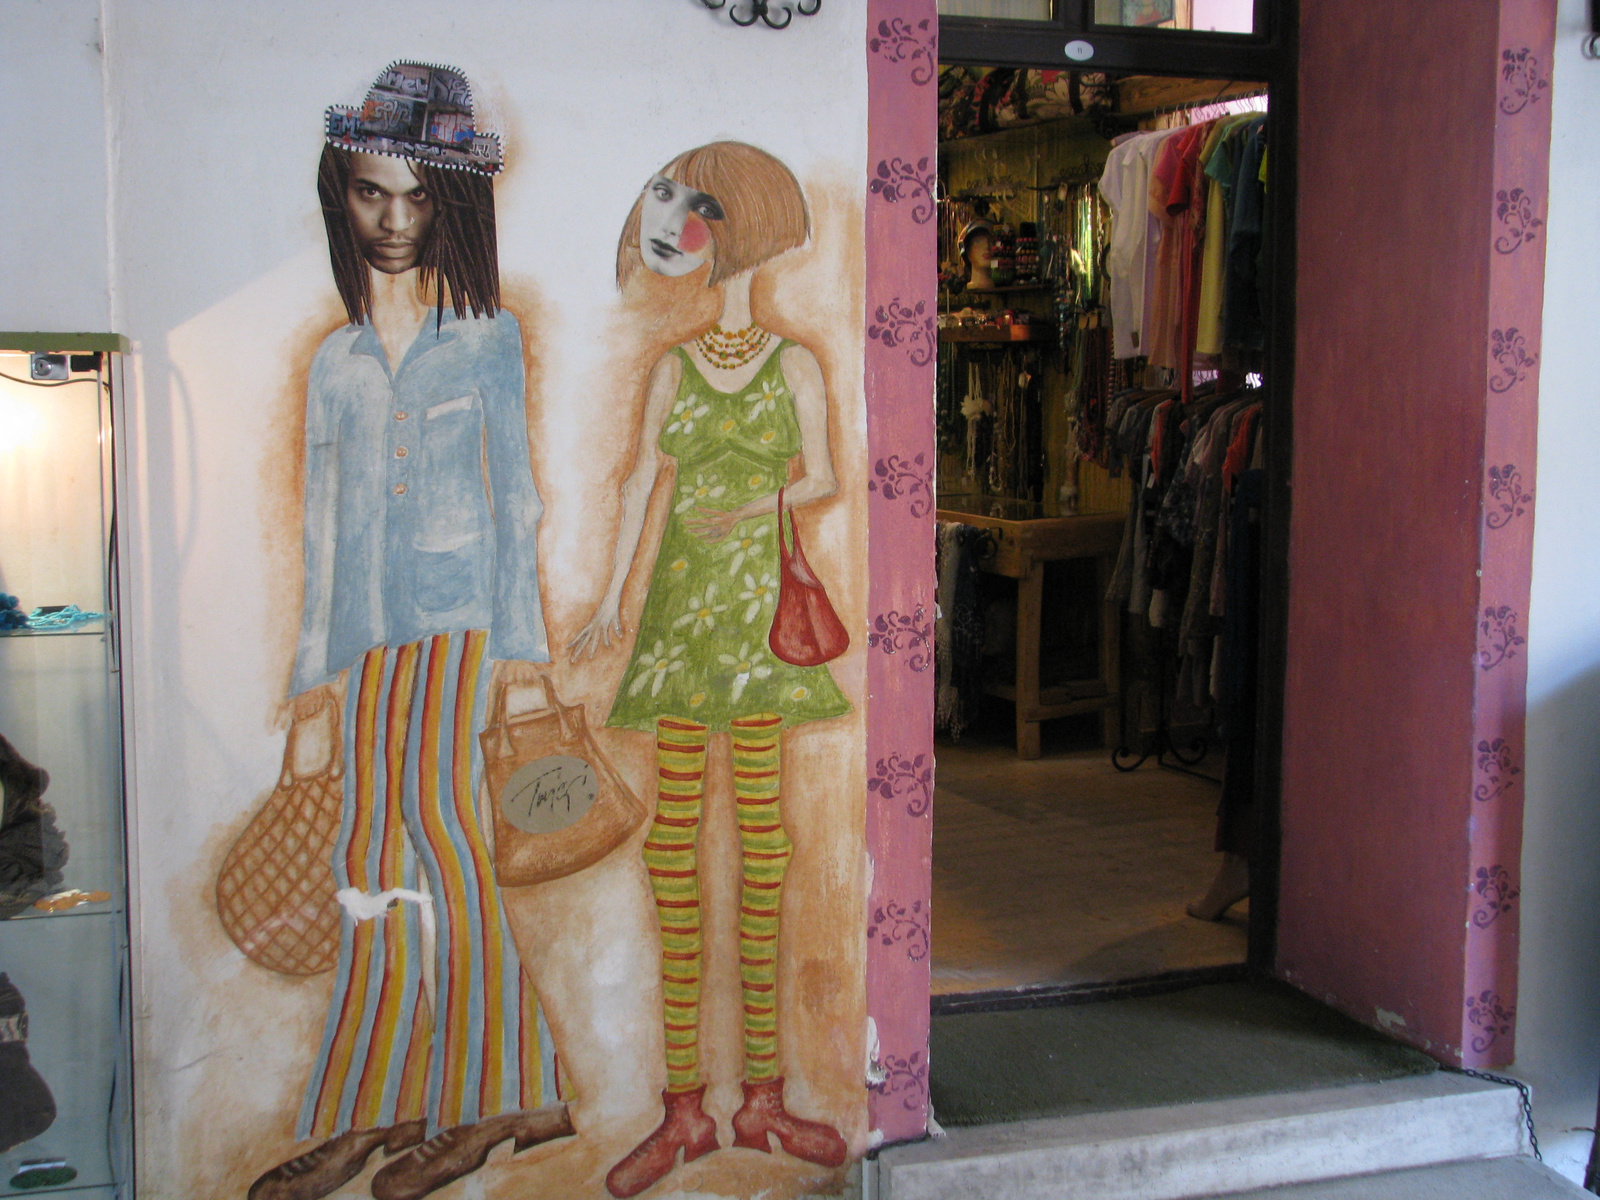 festett fal a bejáratnál lévő üzlet mellett